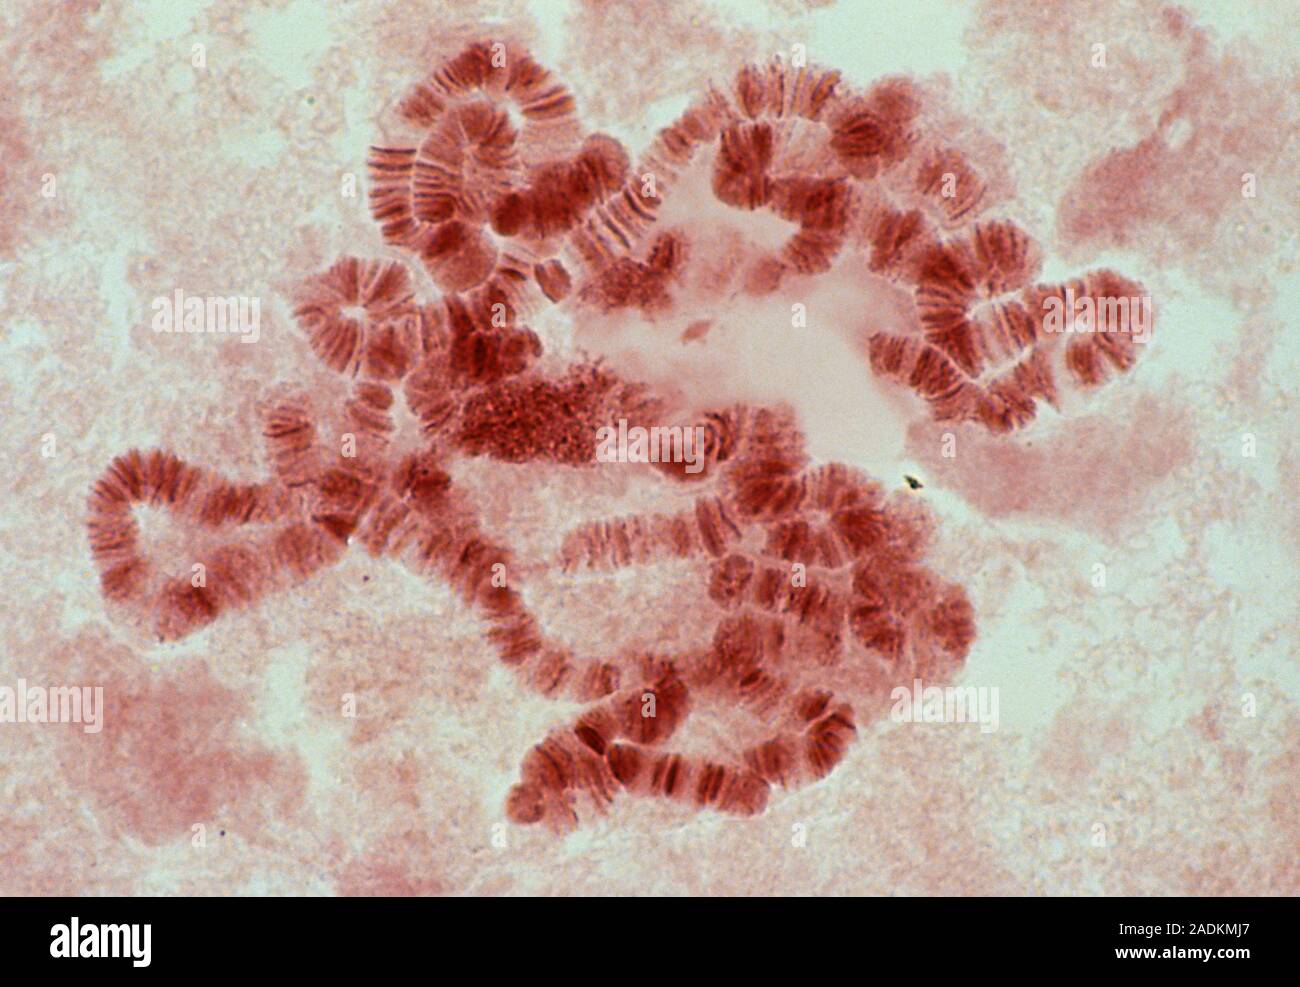 Генетика слюна. Политенные хромосомы слюнных желез личинок комаров. Препарат политенные хромосомы дрозофилы. Гигантские хромосомы дрозофилы. Политенные хромосомы слюнной железы дрозофилы.